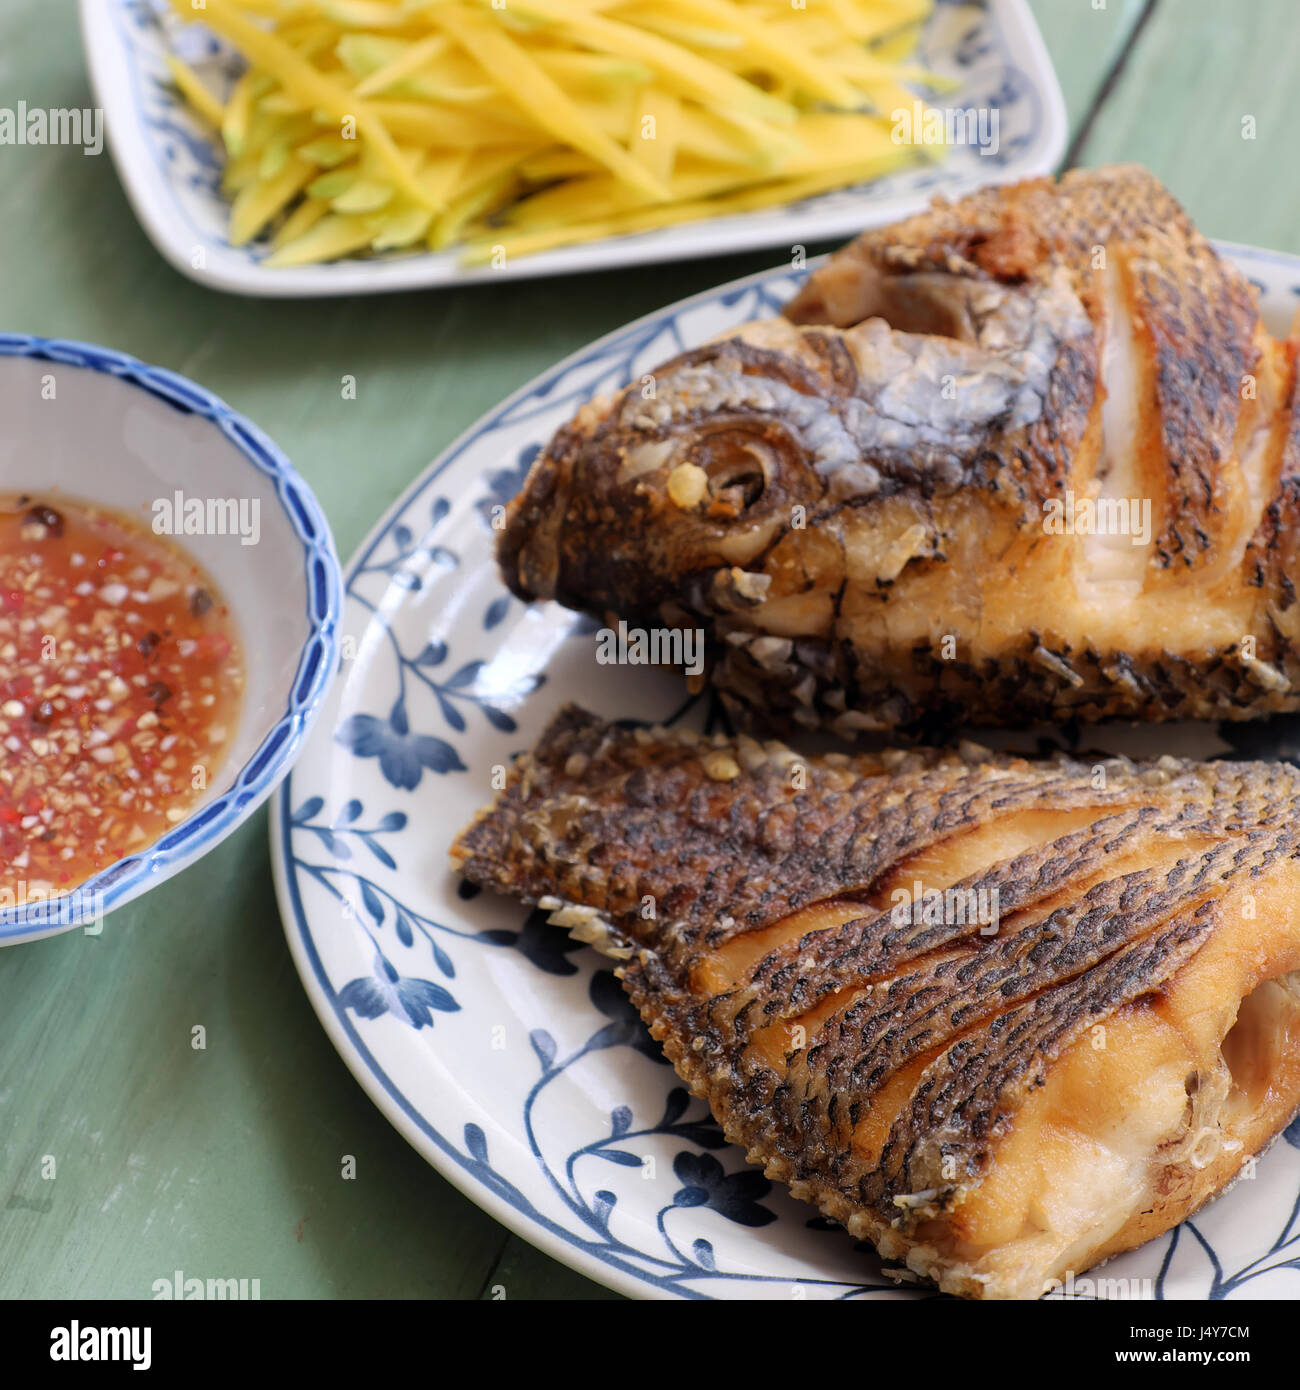 Vietnamesisches Essen ist für tägliche Mahlzeit, gebratenen Fisch mit Mango und Fischsauce, Titapia Fisch oder St. Backfisch Peter lecker Essen Stockfoto